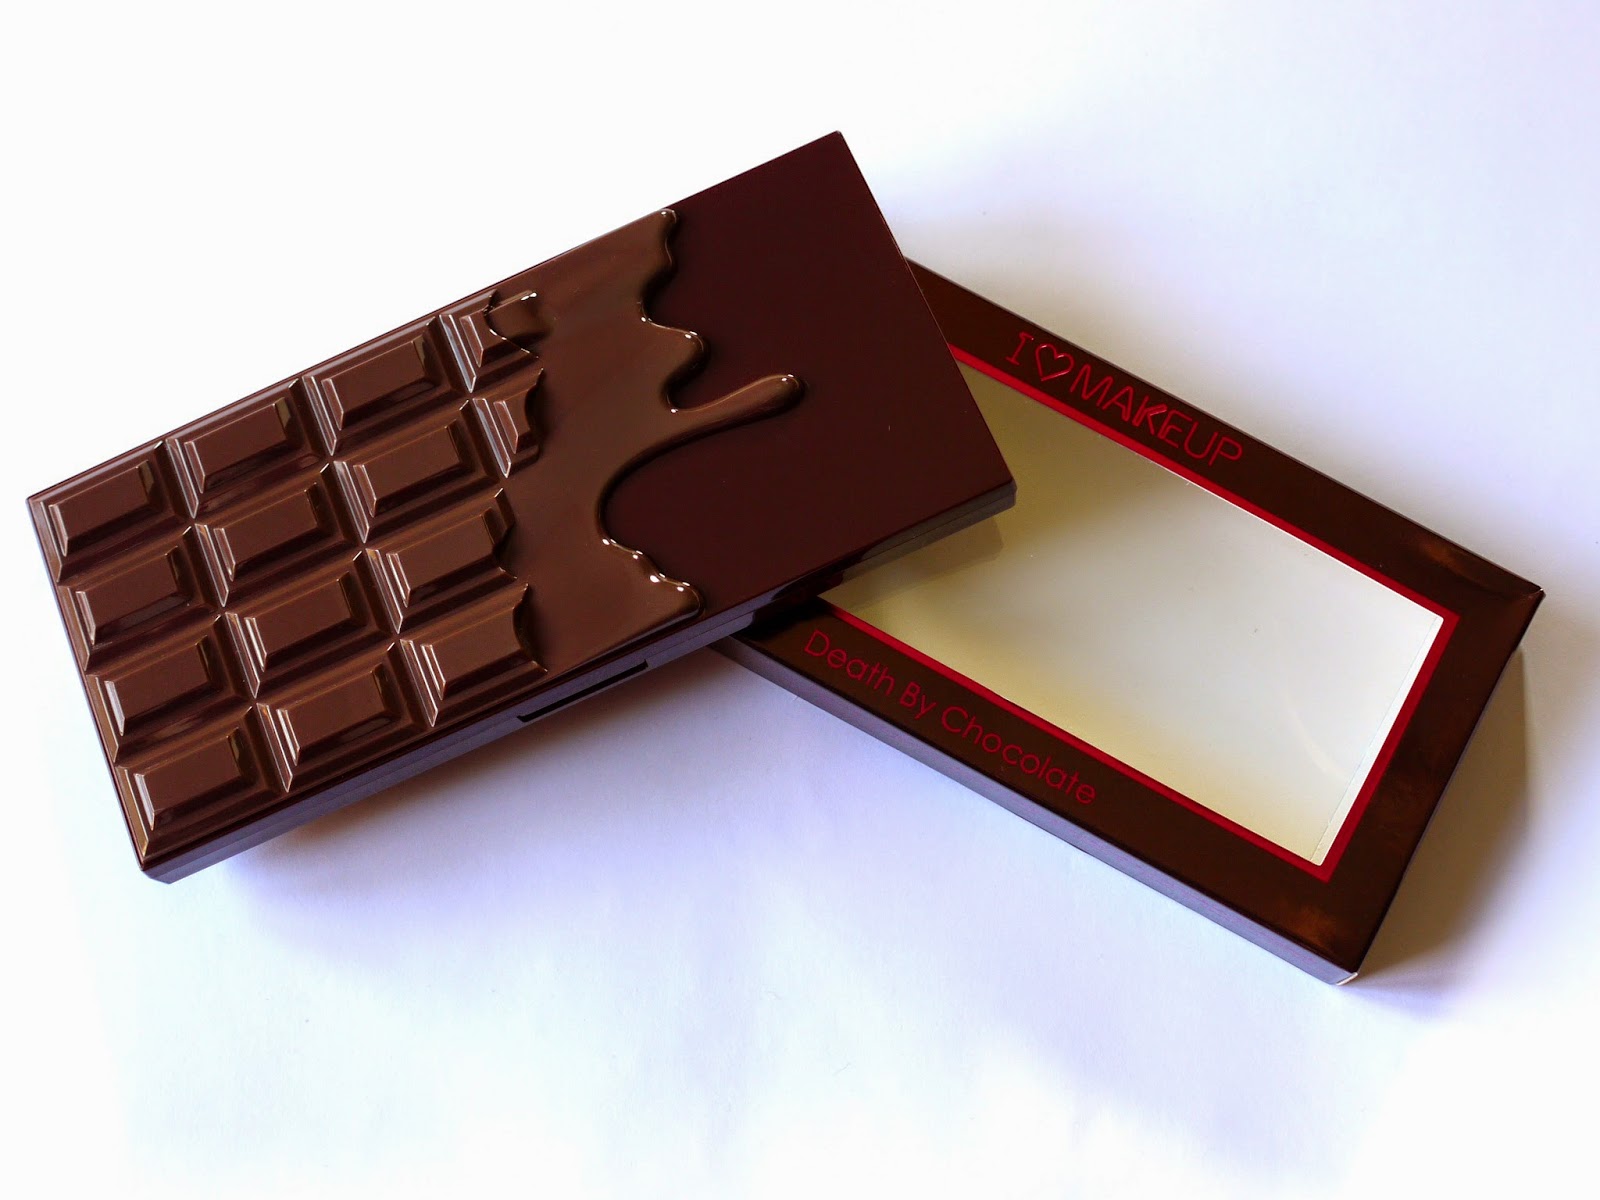 Революшен шоколадка. Палетки революшен шоколадки. Шоколадная палетка теней. Палетка теней революшен шоколадка. Палитра из шоколада.